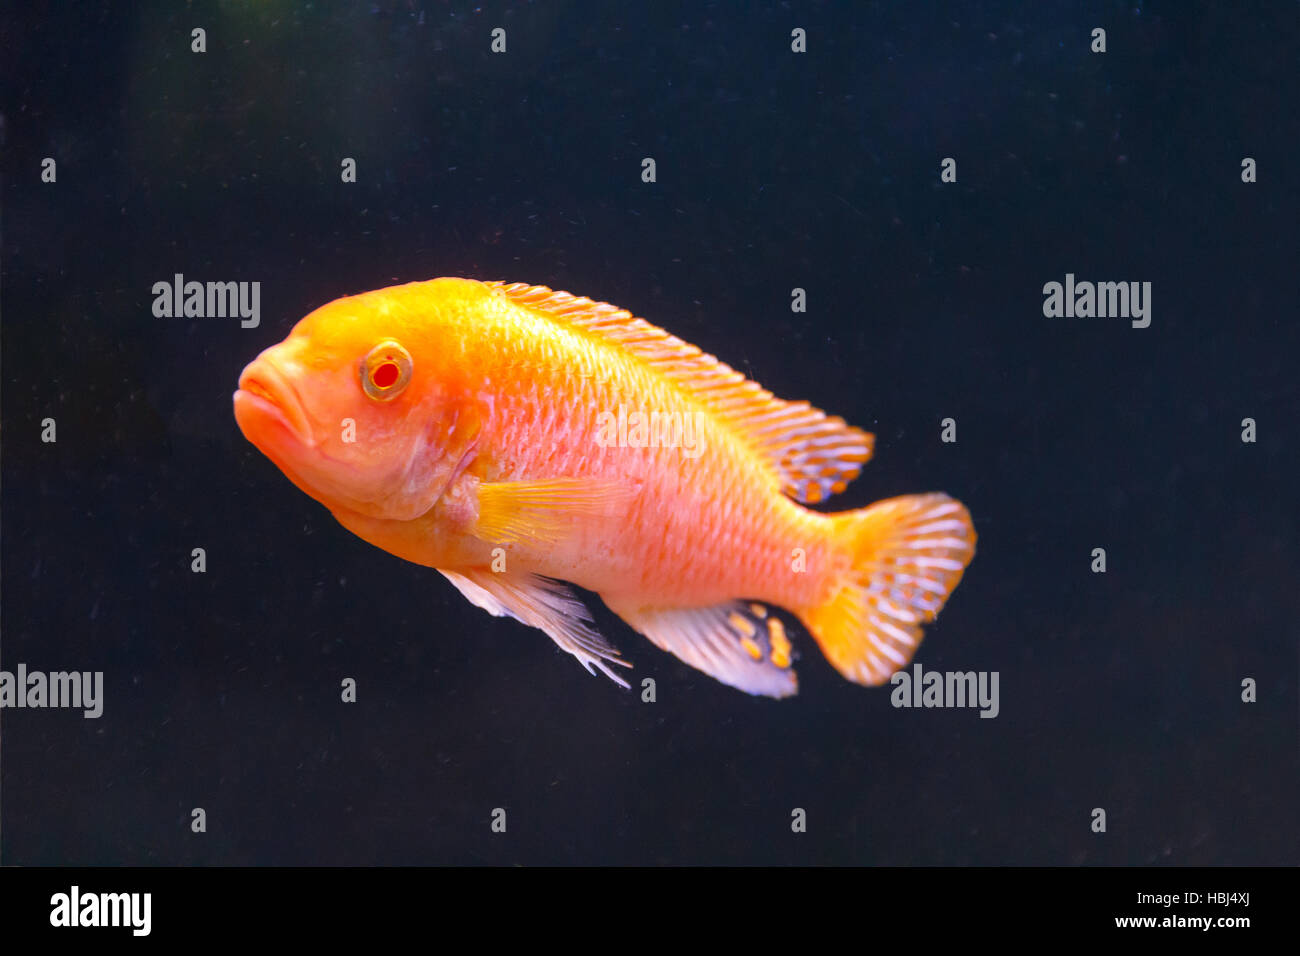 One orange aulonocara fish swimmimg Stock Photo